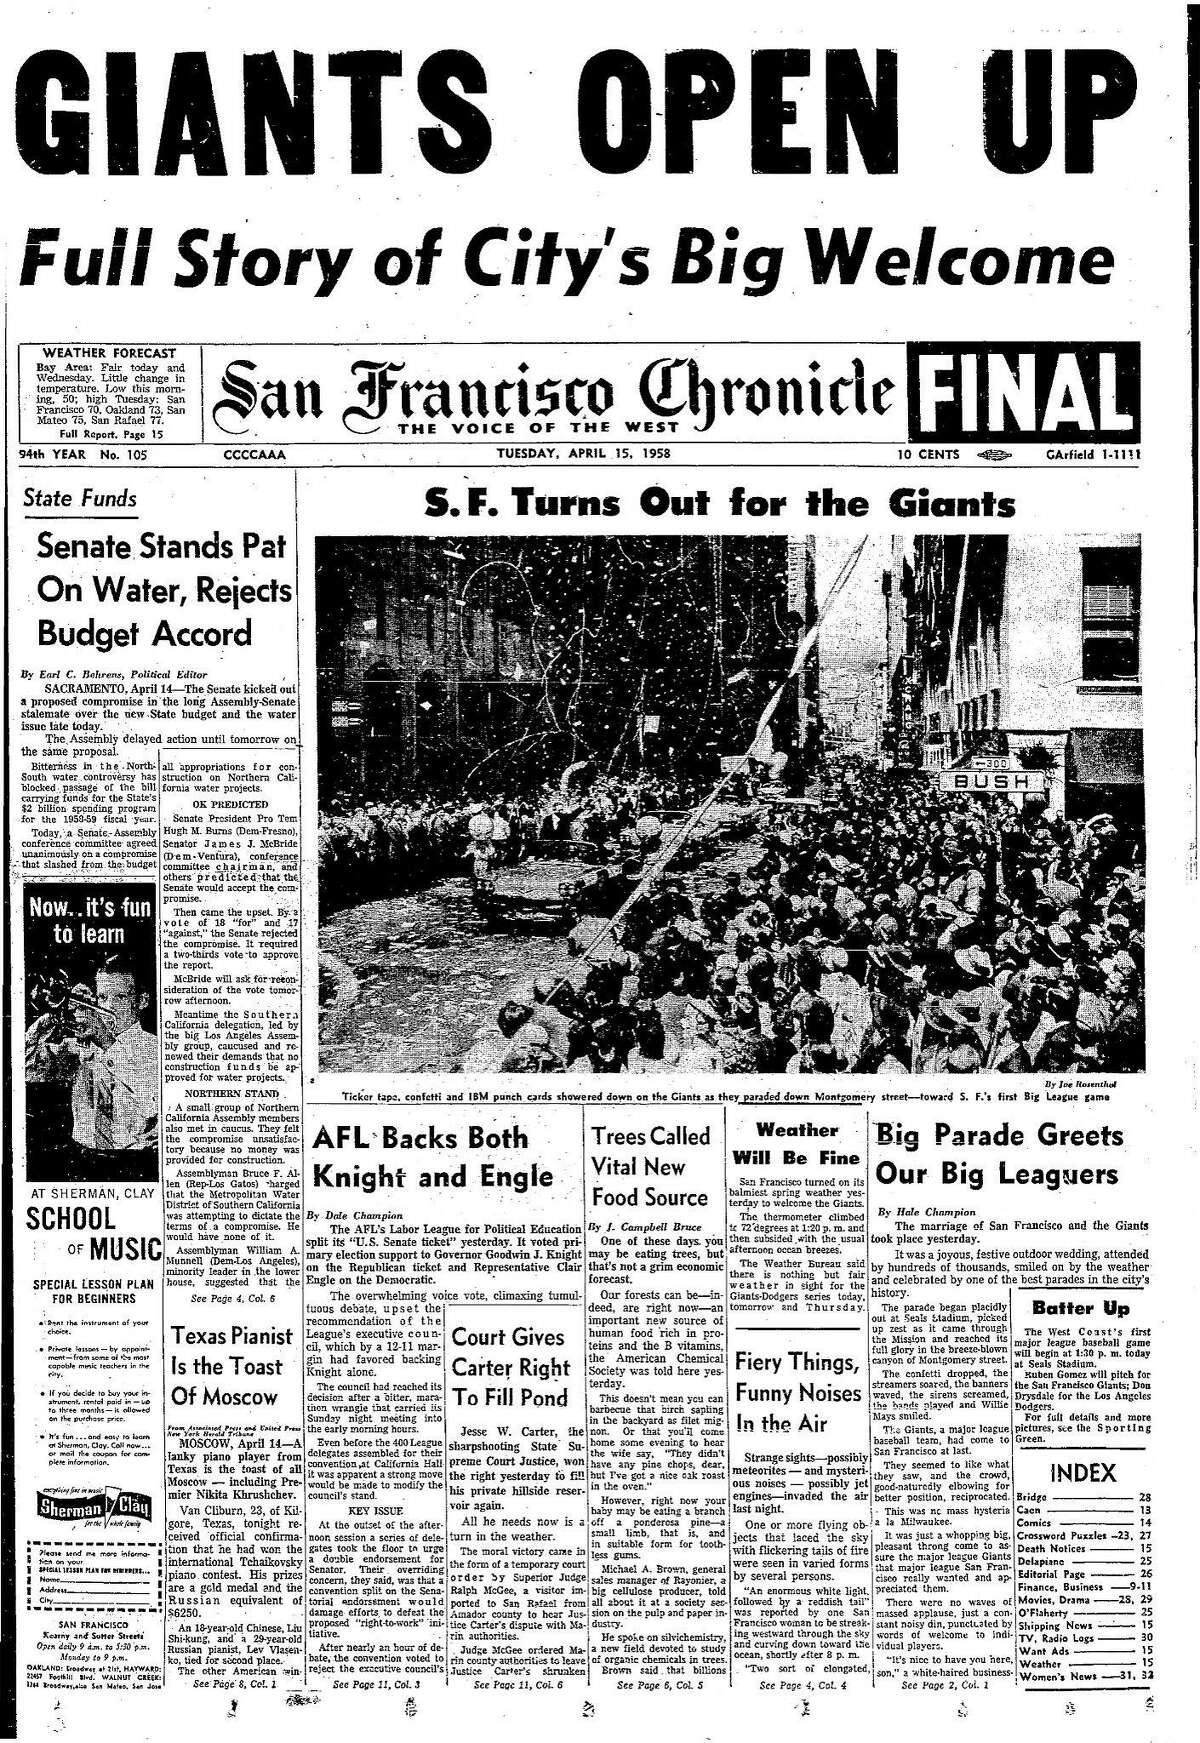 历史编年史头版1958年4月15日，巨人队的开幕日游行，这一天将在海豹体育场开幕Chron365, Chroncover